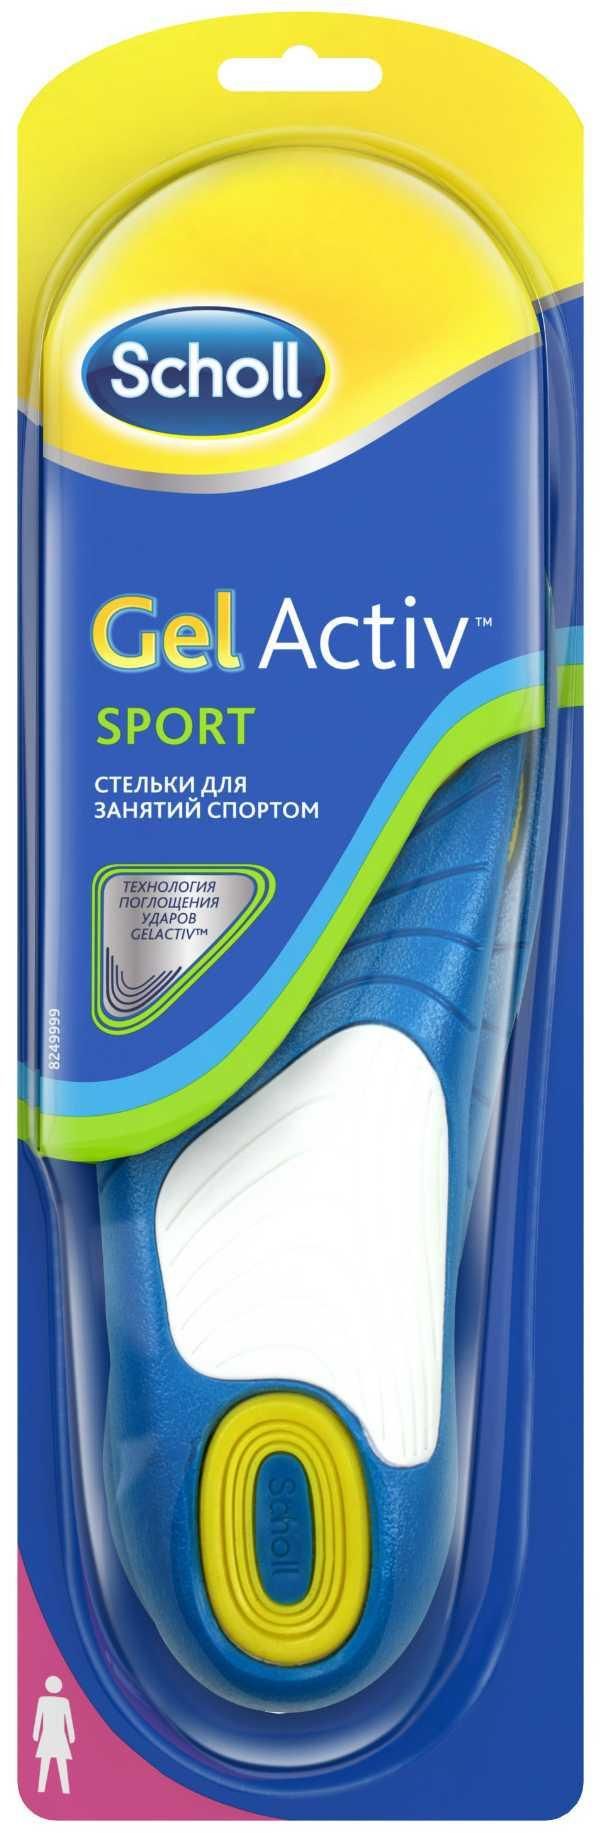 фото упаковки Scholl GelActiv стельки для занятий спортом женские